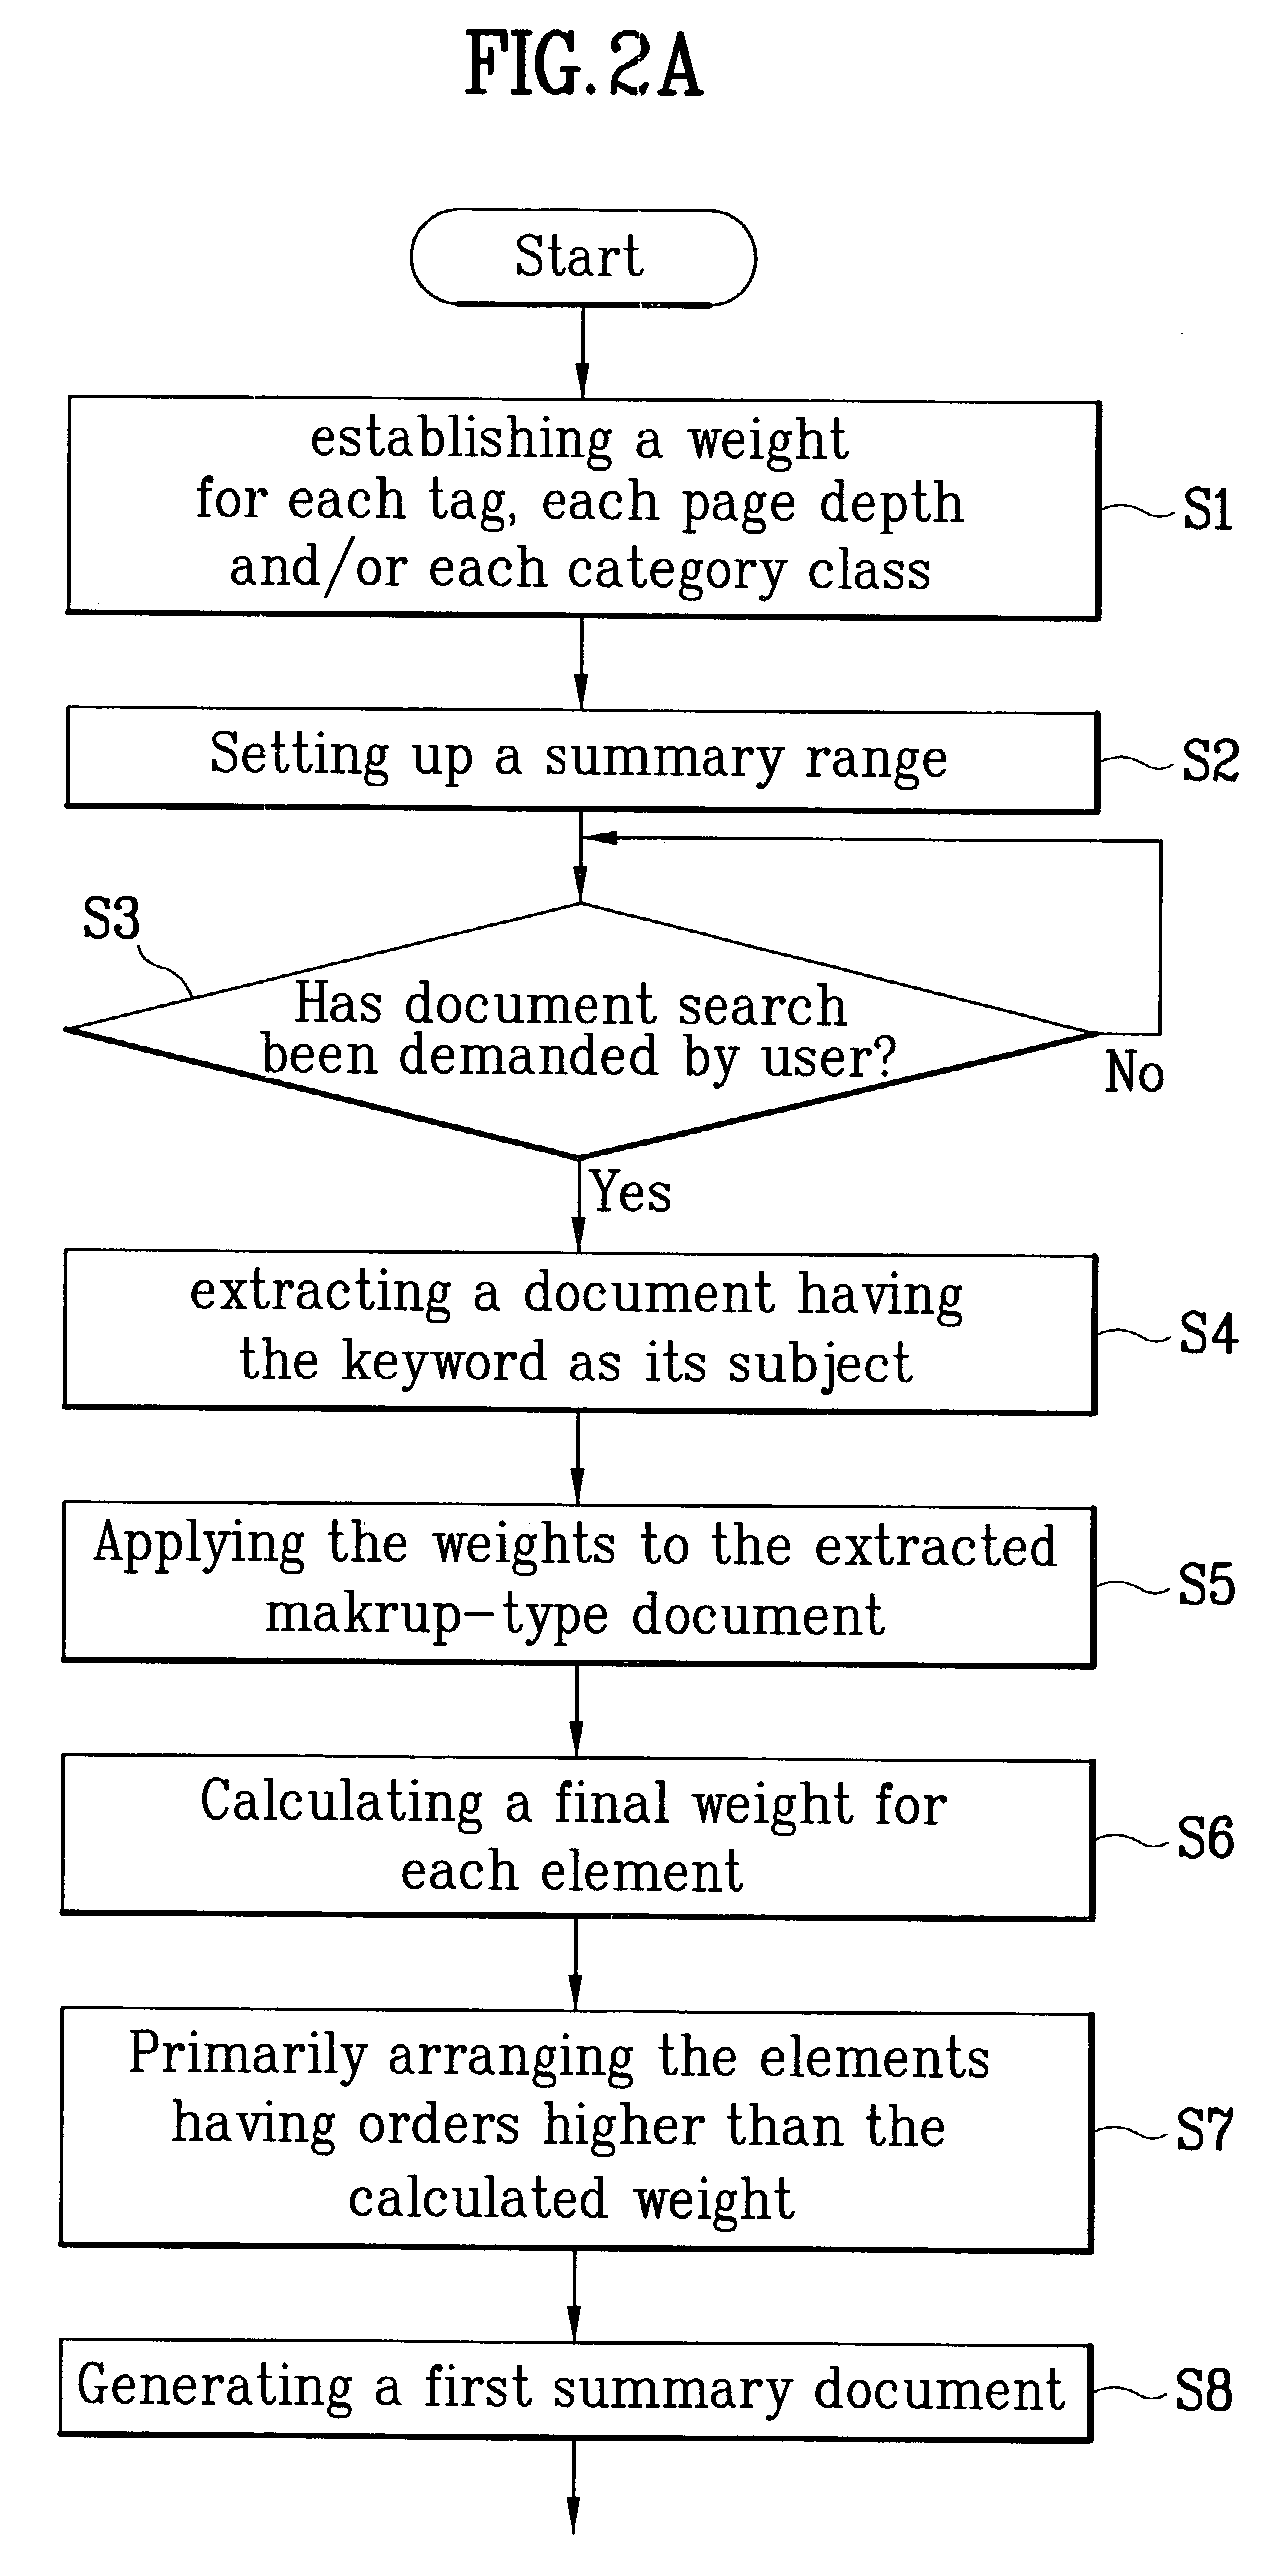 Method of summarizing markup-type documents automatically